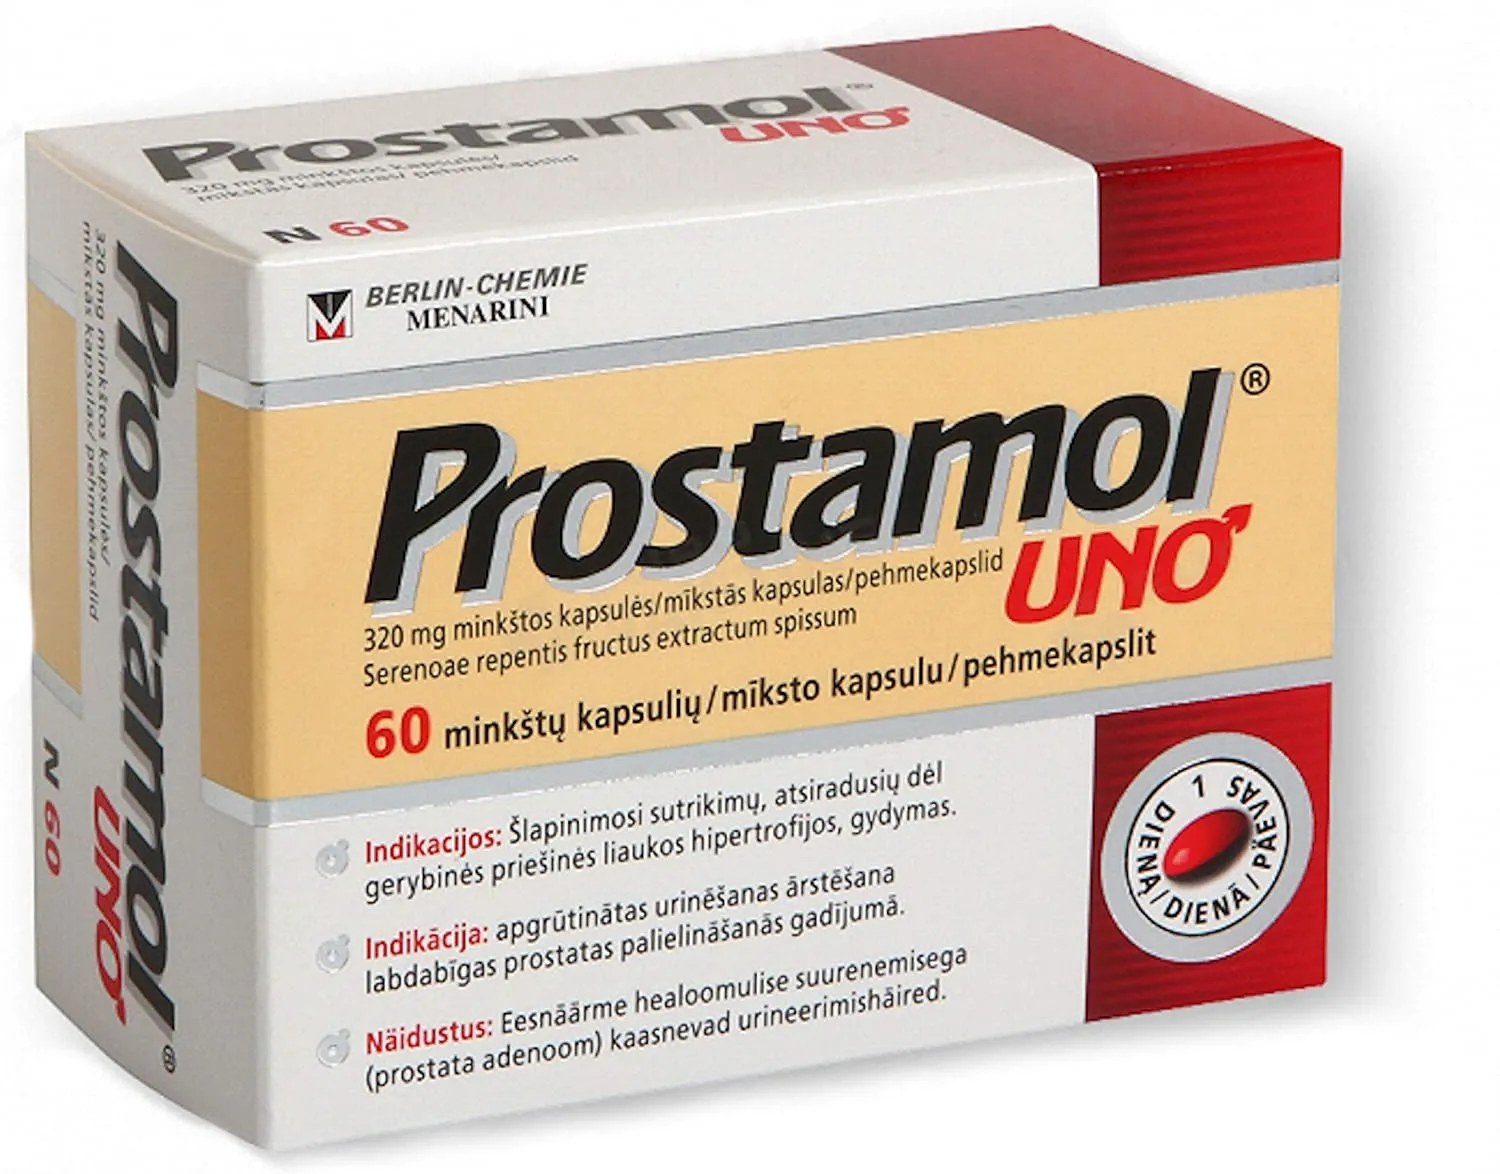 Urotrin цена ✚ България ✚ къде да купя ✚ състав ✚ мнения ✚ коментари ✚ отзиви ✚ производител ✚ в аптеките.